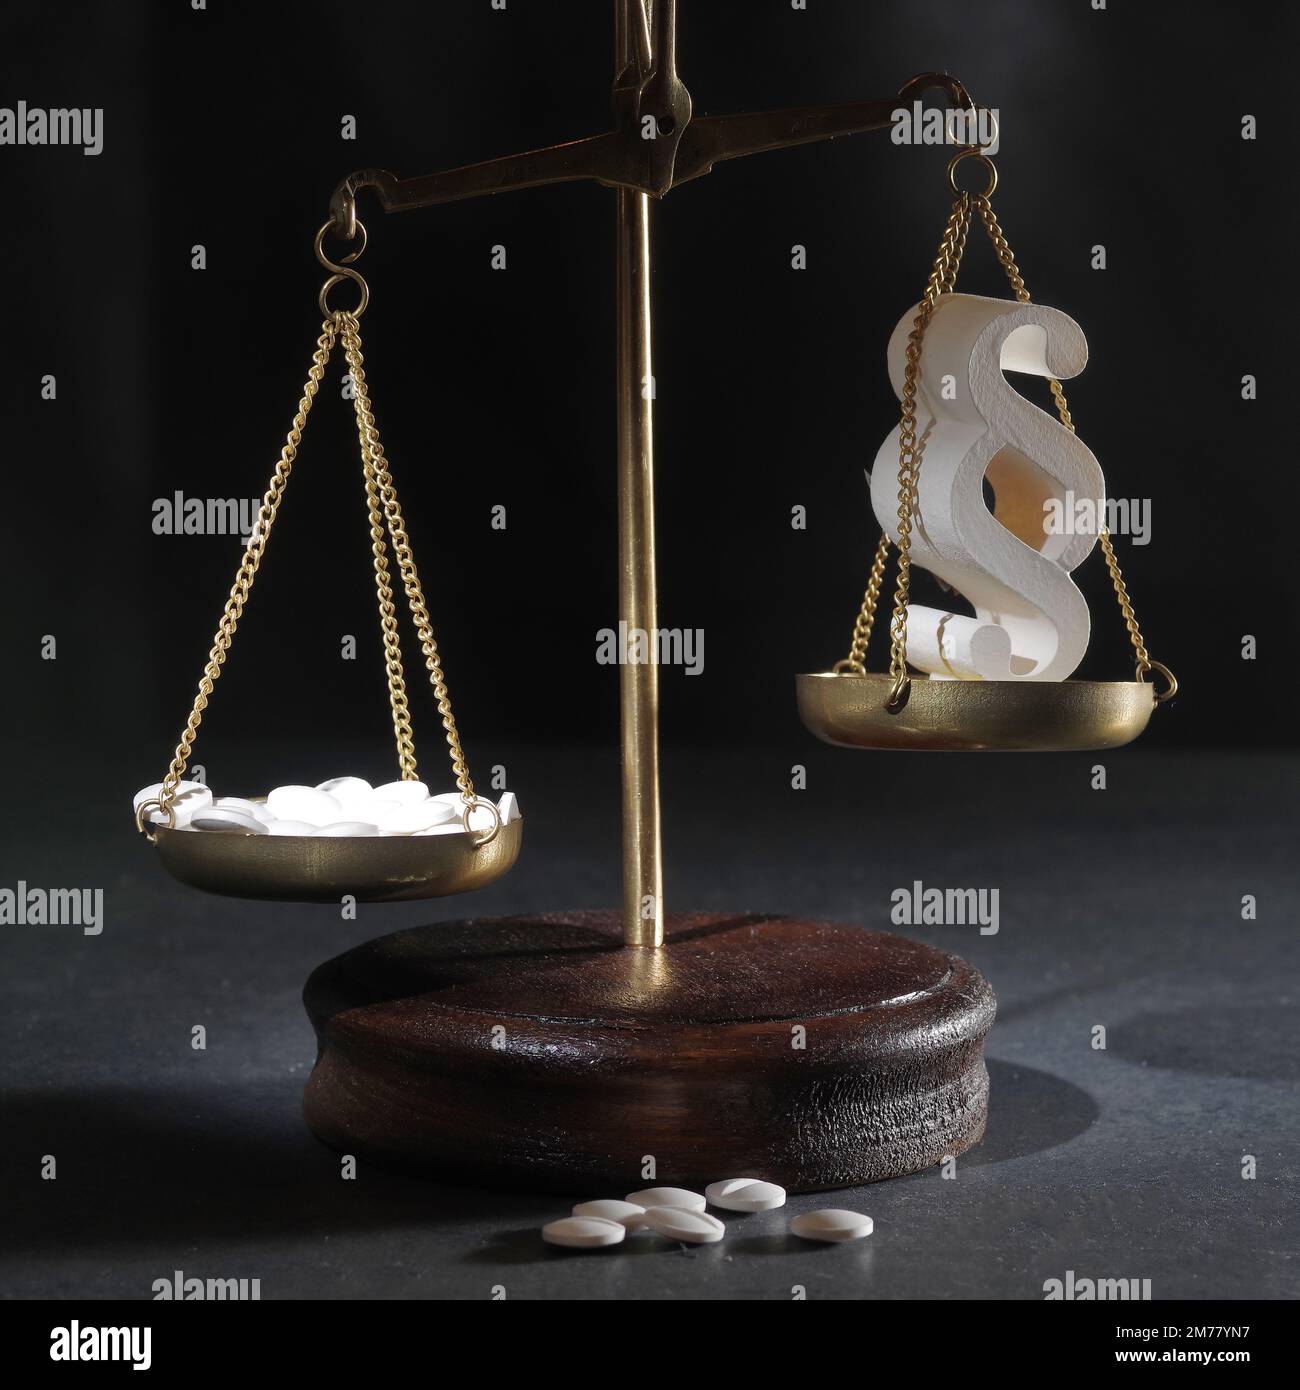 Droit en médecine. Met à l'échelle la justice et les pilules sur un fond abstrait. La notion de droit médical et de crimes médicaux Banque D'Images